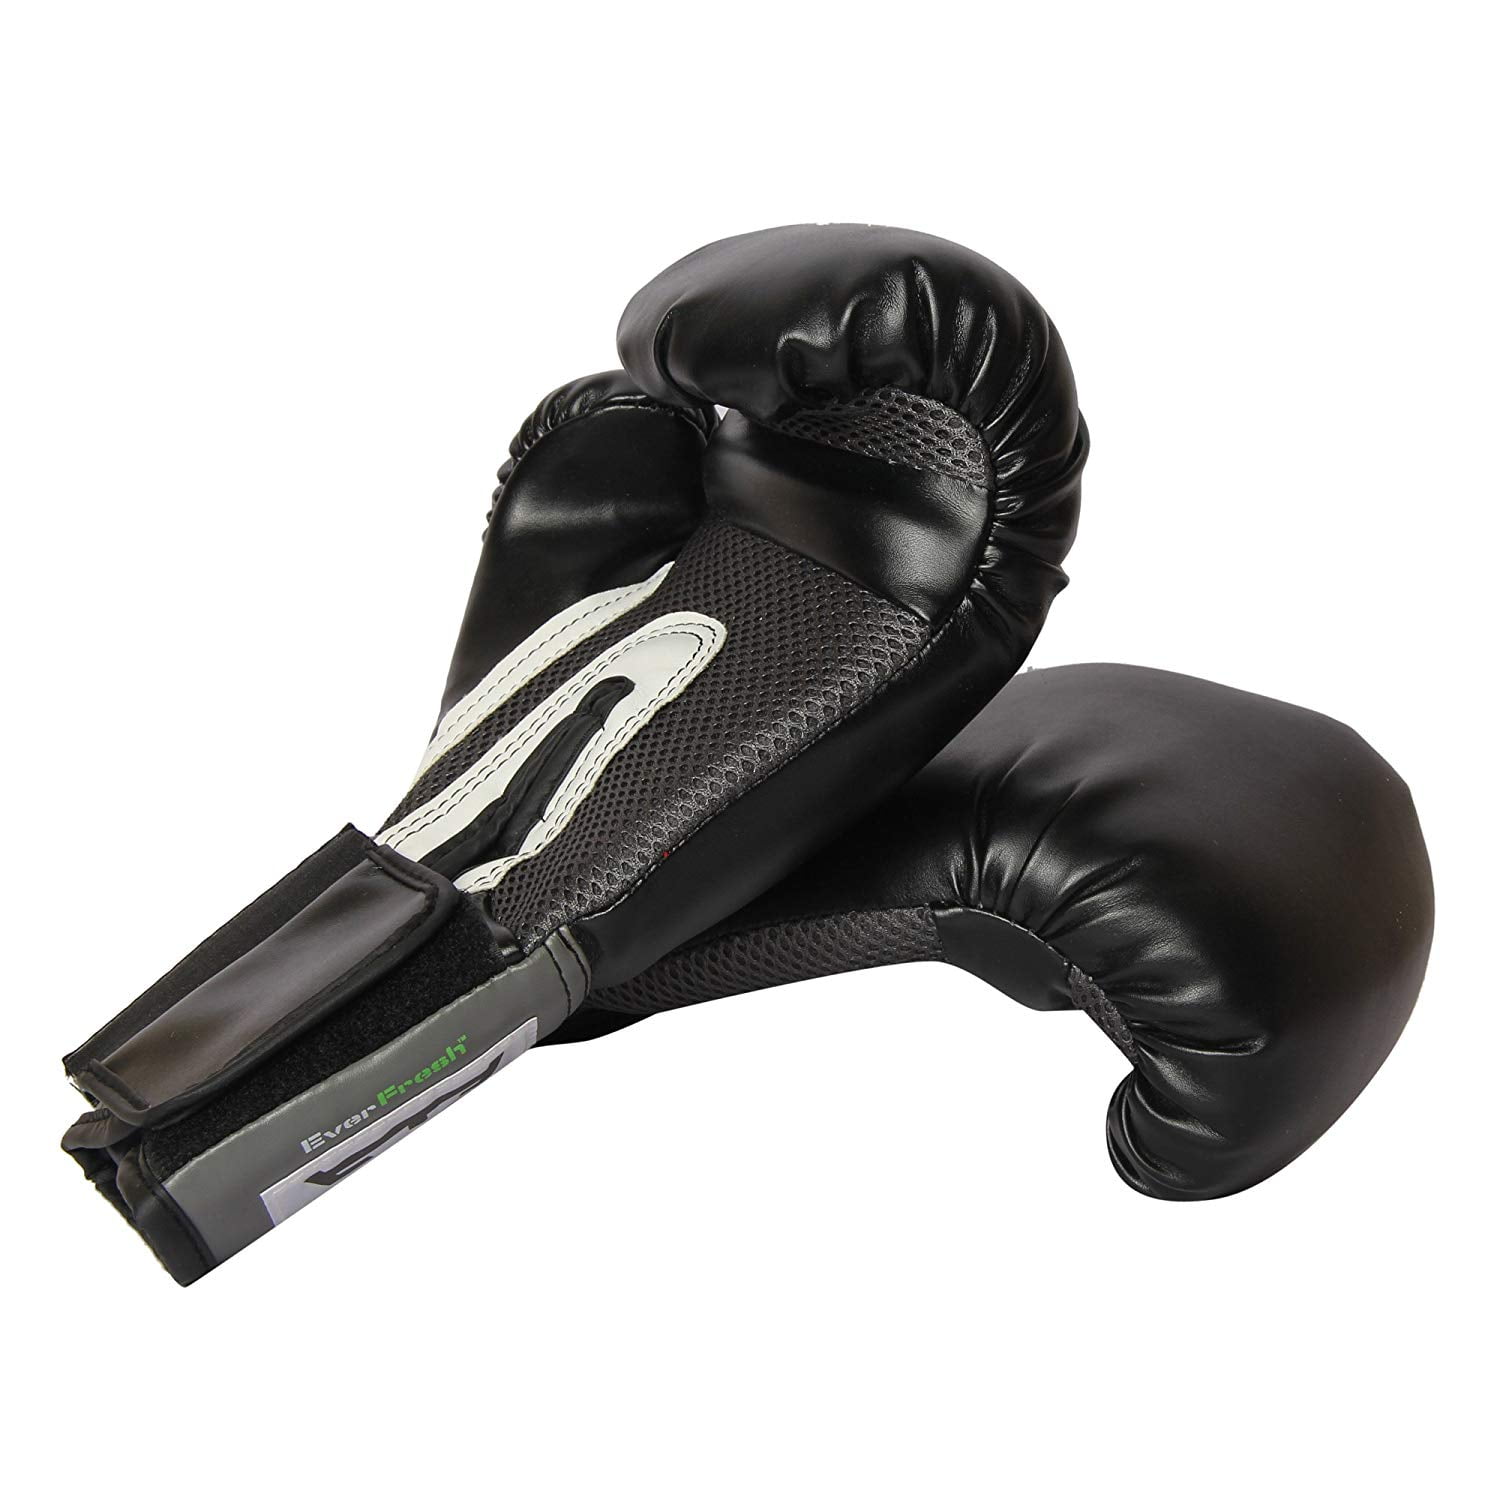 Everlast 8 Oz Black Pro Style Training Boxing Gloves